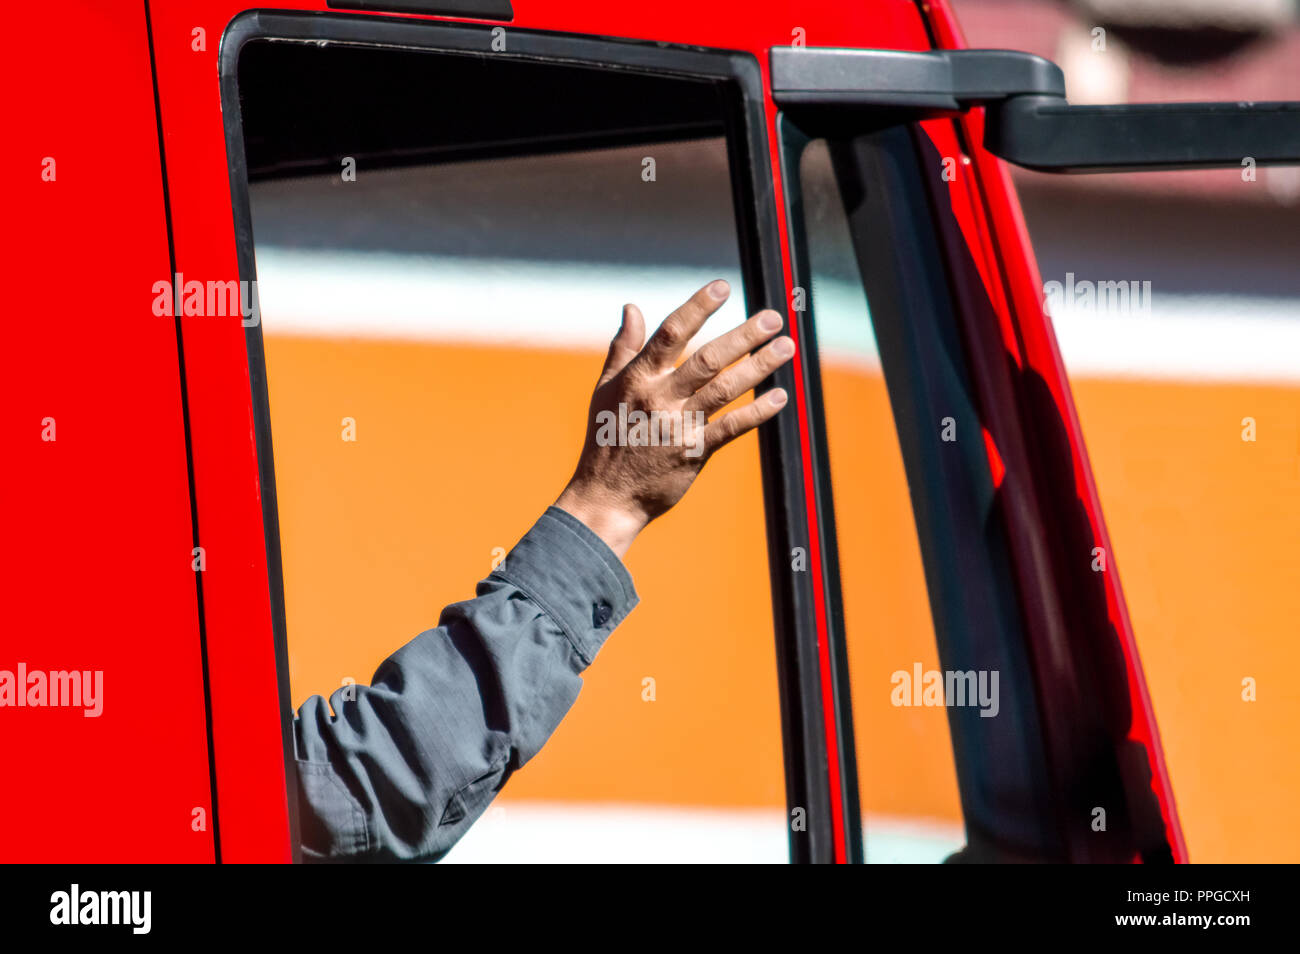 El brazo de una persona saludando desde la ventana de un camión rojo Foto de stock